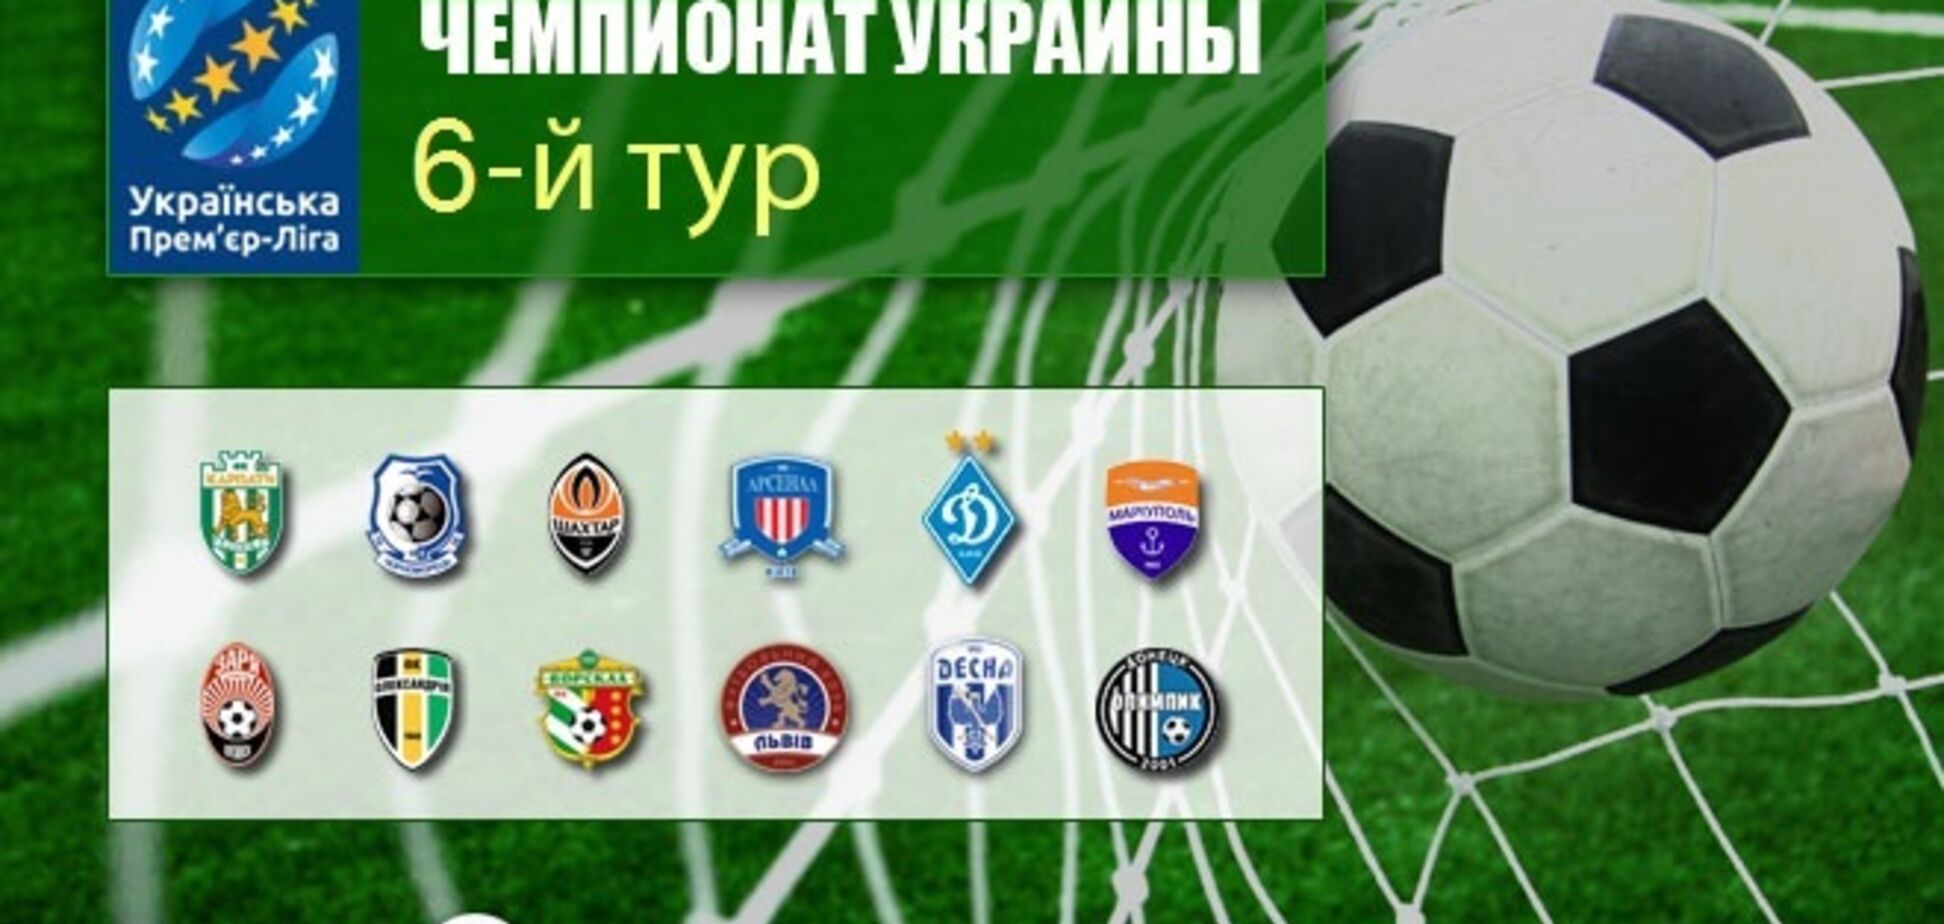 6-й тур чемпионата Украины по футболу: результаты и обзоры